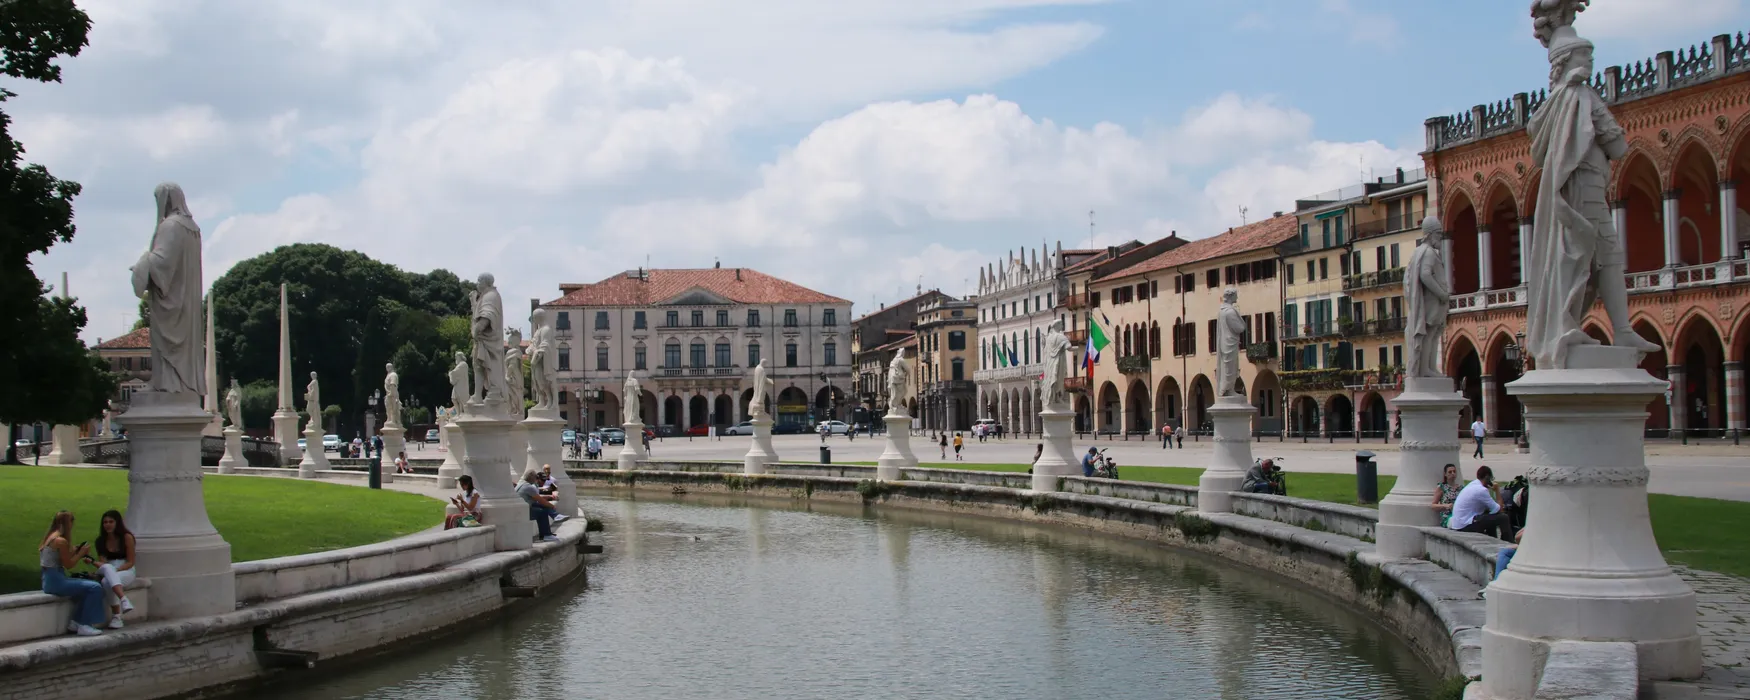 Padwa w jeden dzień: odkryj włoskie miasto z Viewnary